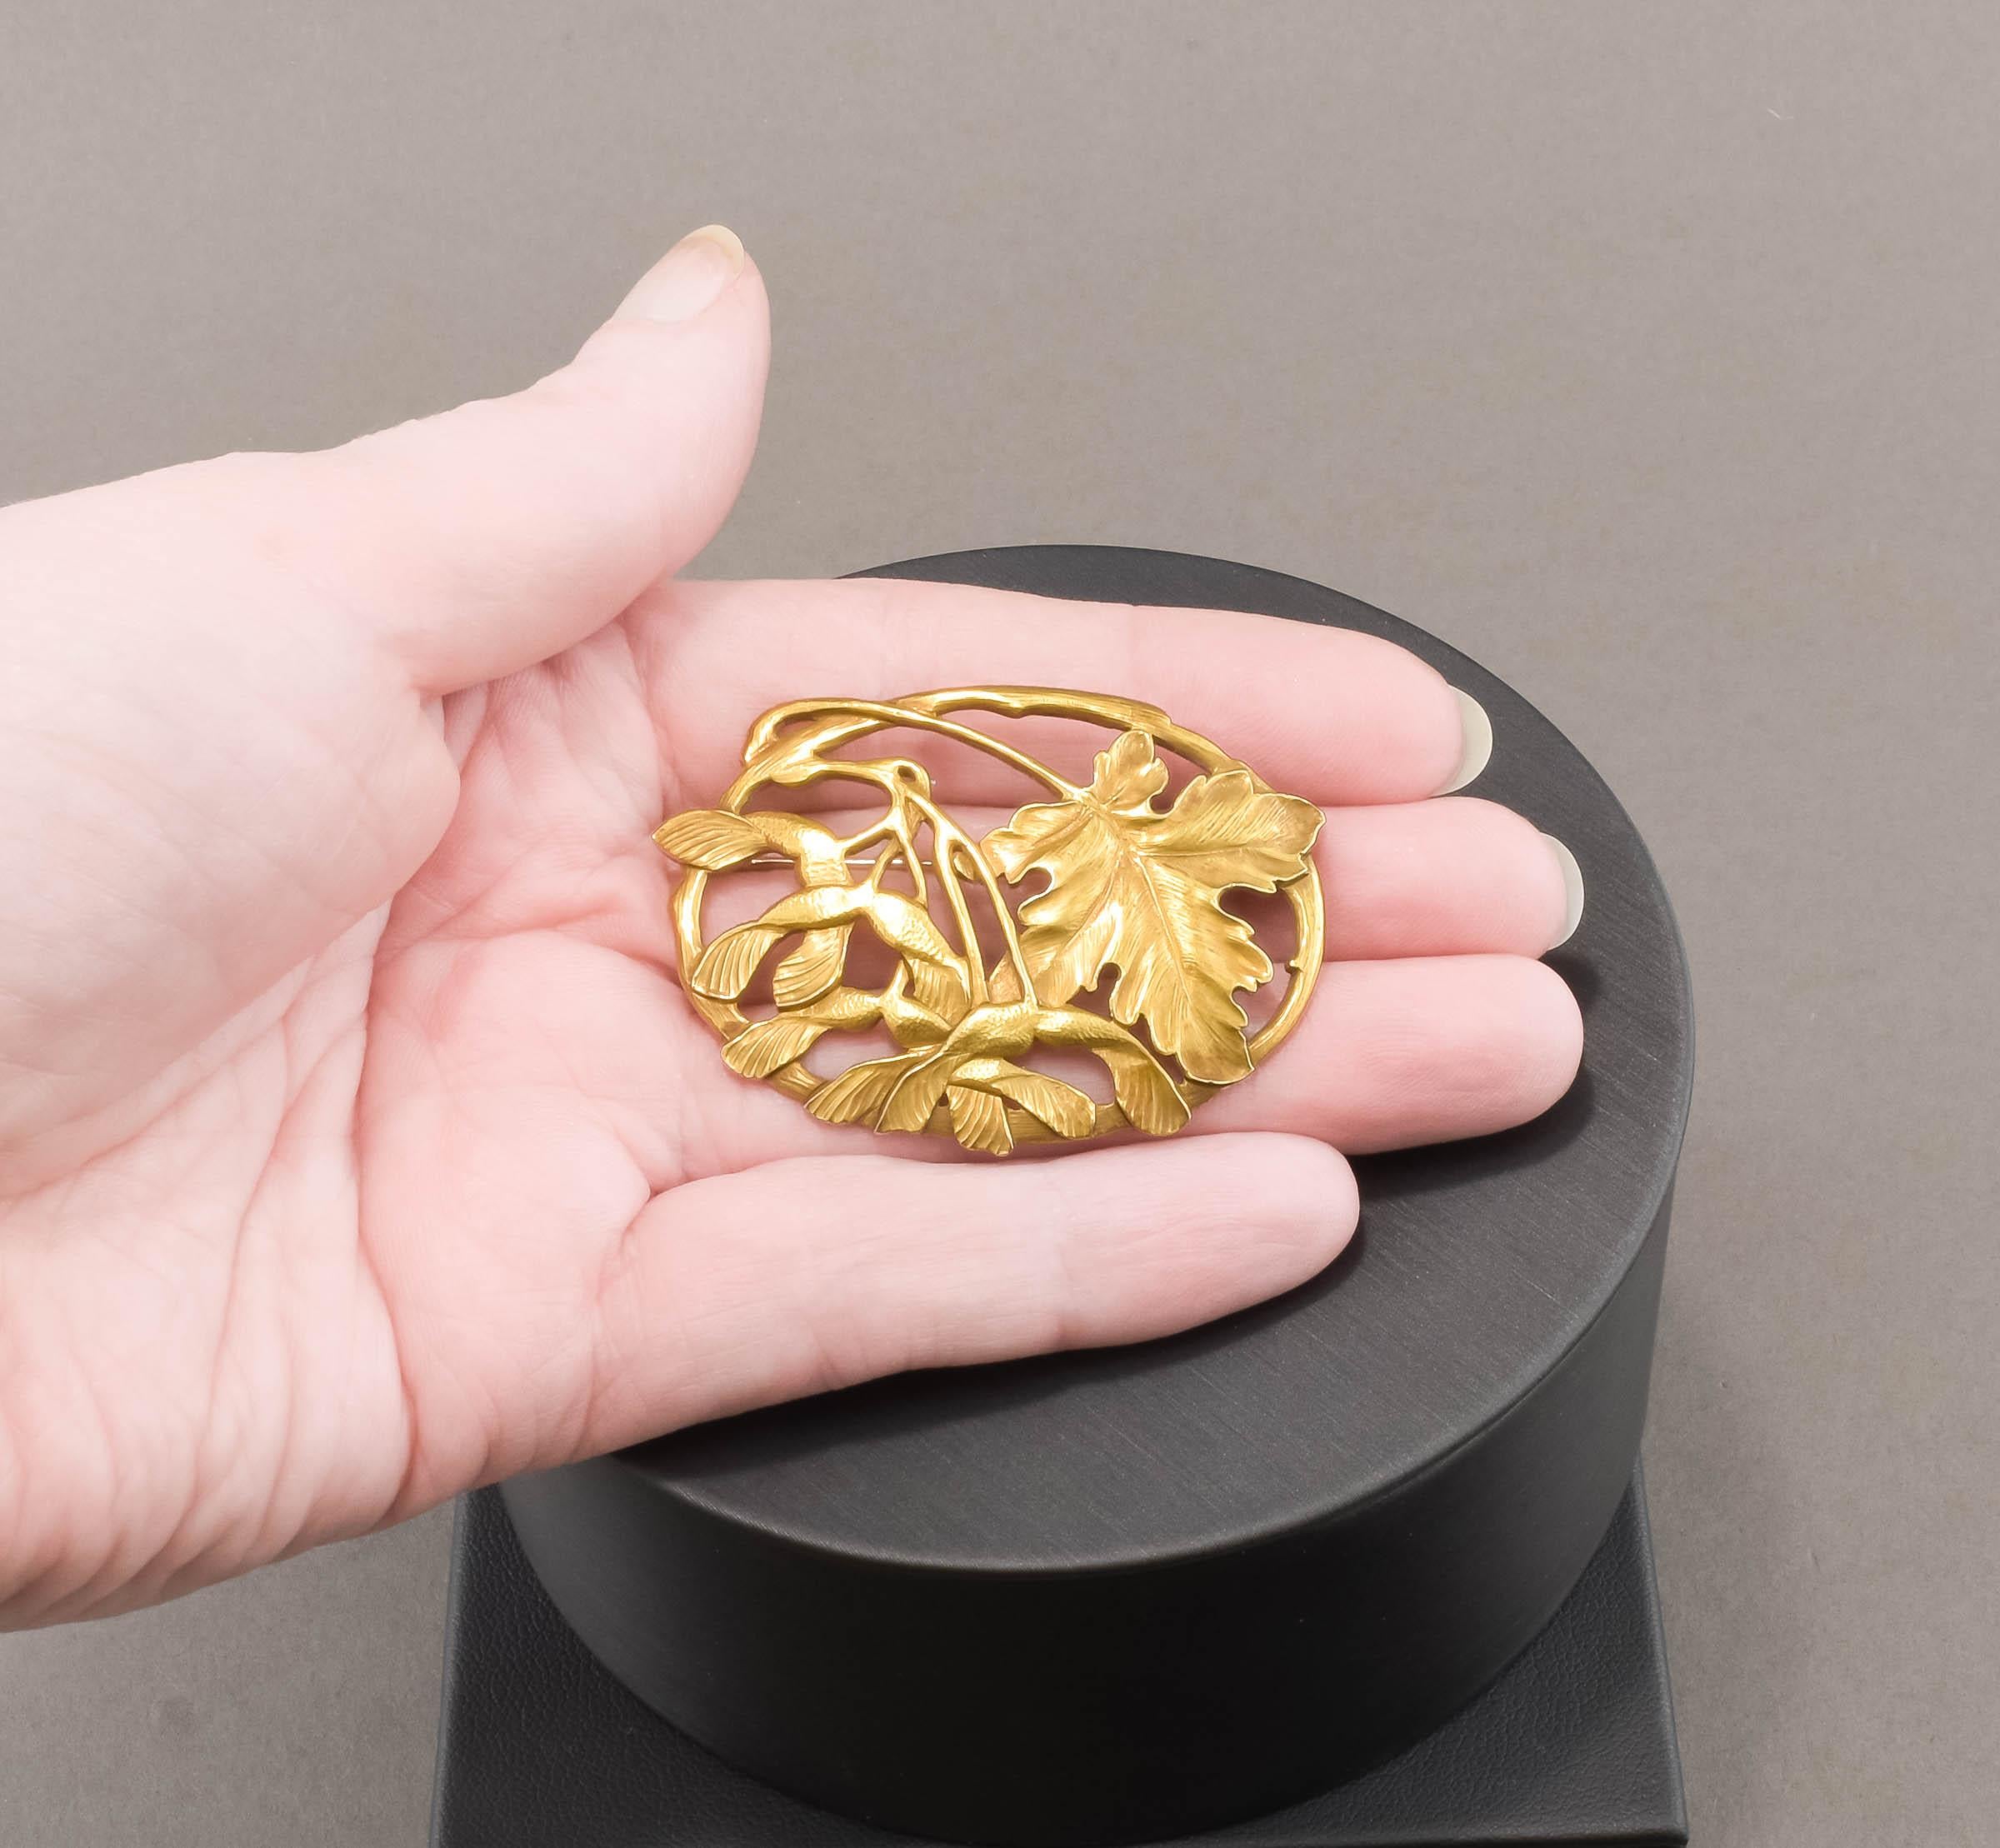 Antique Arts & Crafts 18K Gold Brooch by Potter Studio - Large Foliate Design 6